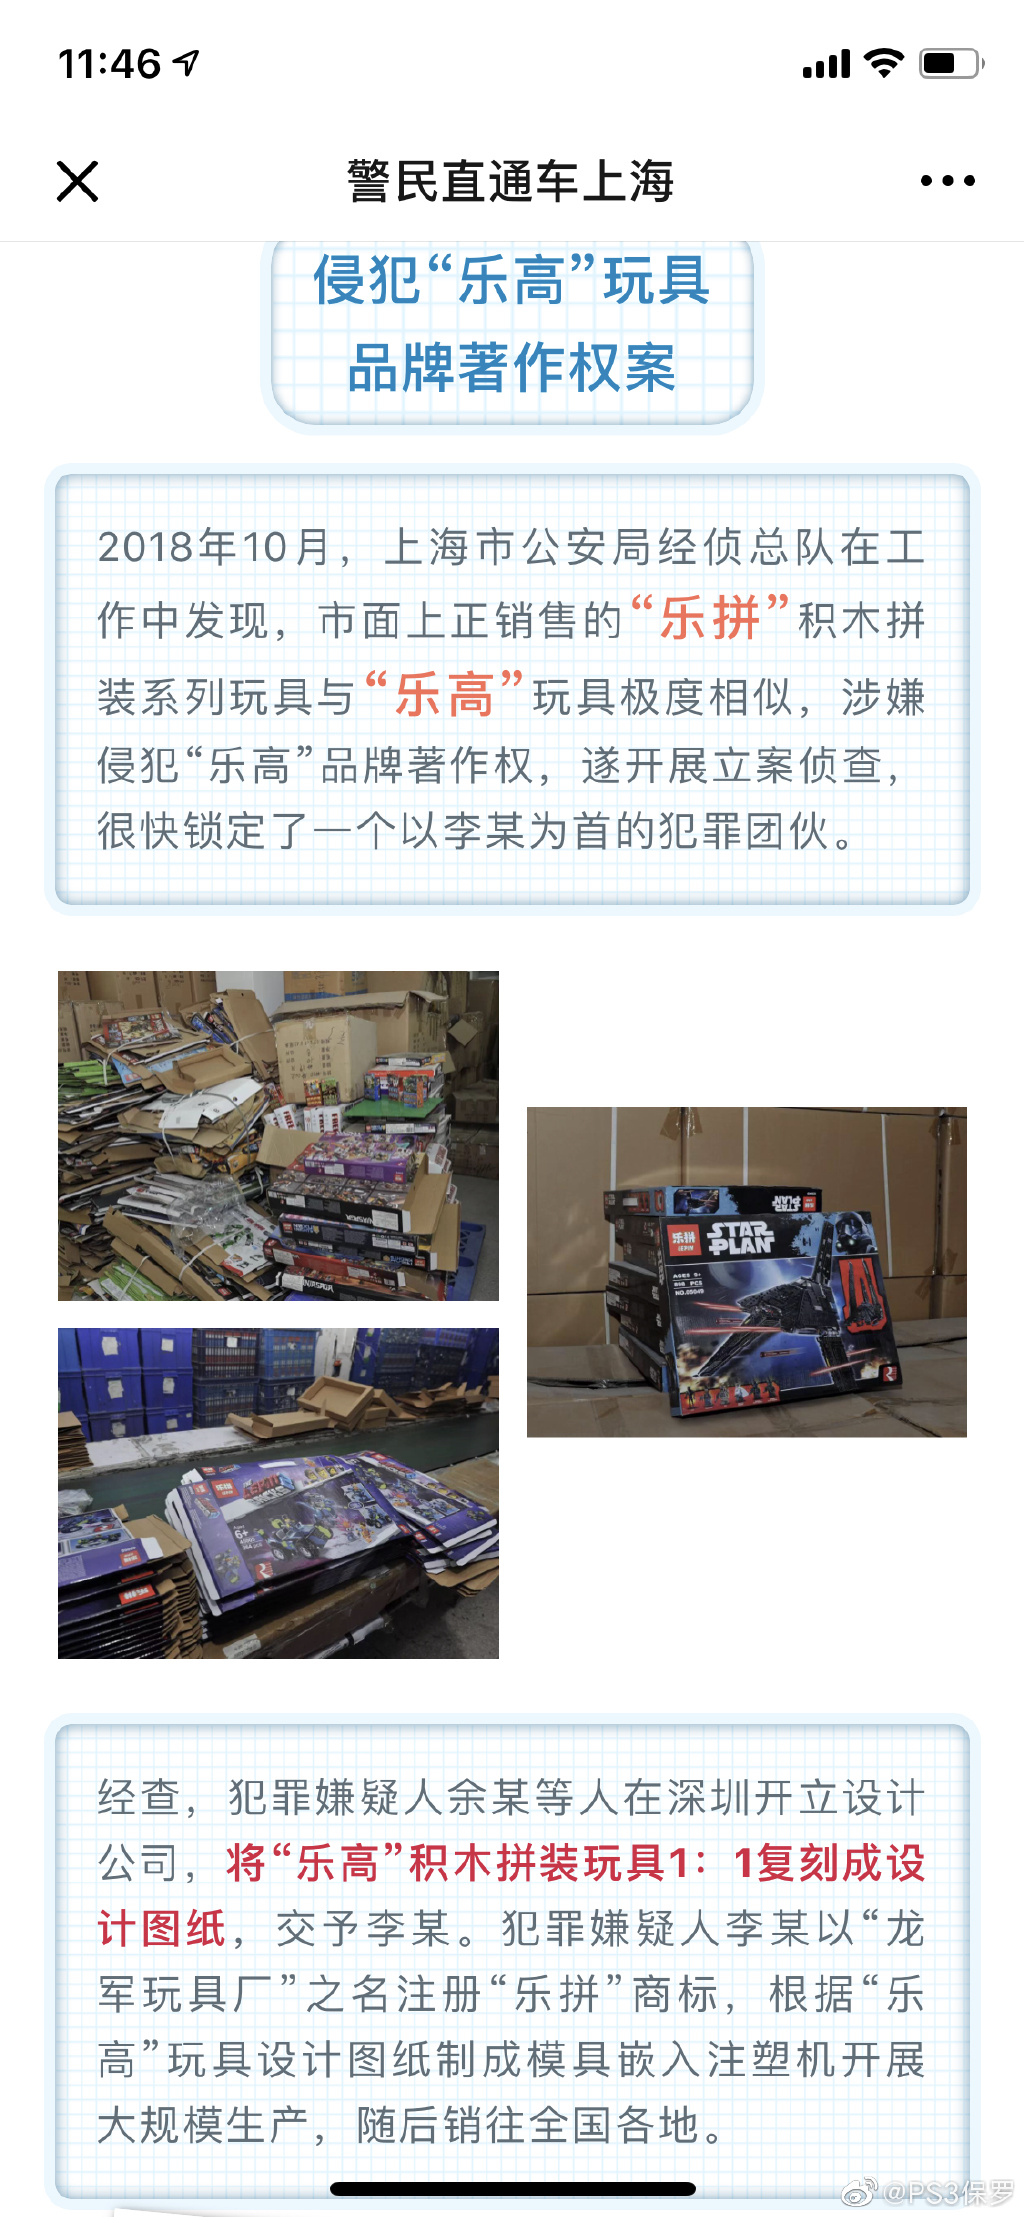 著名的中国山寨乐高品牌-乐拼，4月23日被上海警方一举摧毁，涉案金额超过2亿！